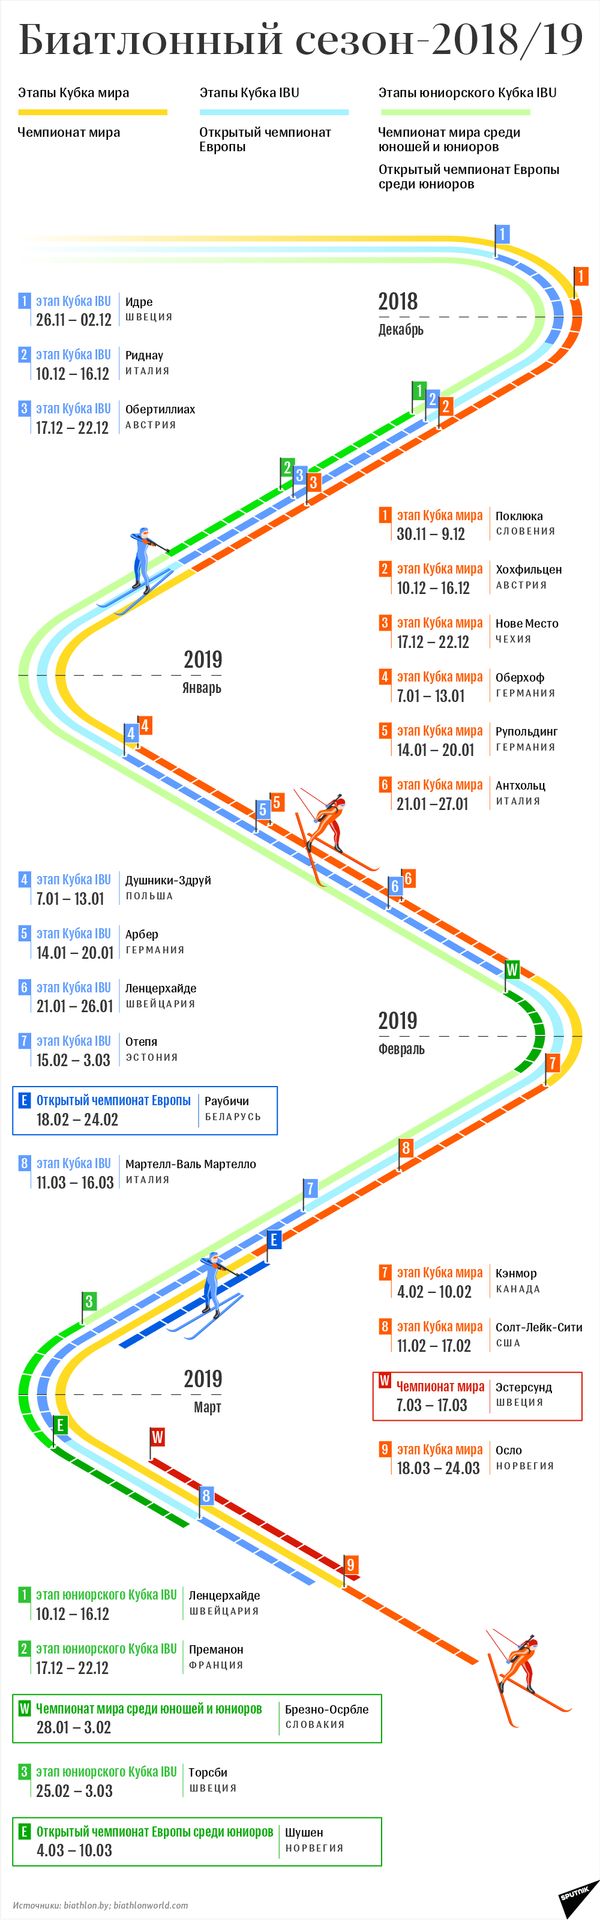 Биатлонный сезон-2018/19 – инфографика на sputnik.by - Sputnik Беларусь